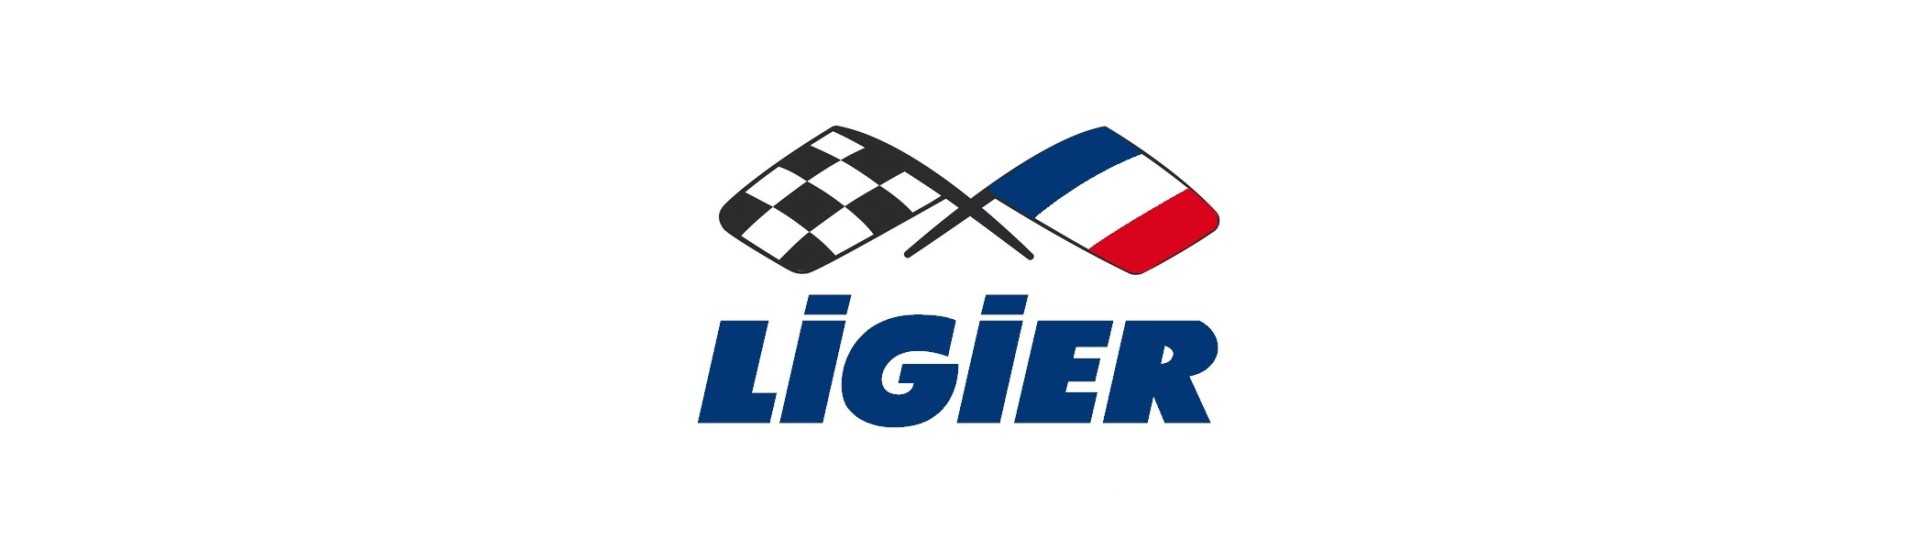 Ersatzradkorb zum besten Preis für ein Auto ohne Führerschein Ligier